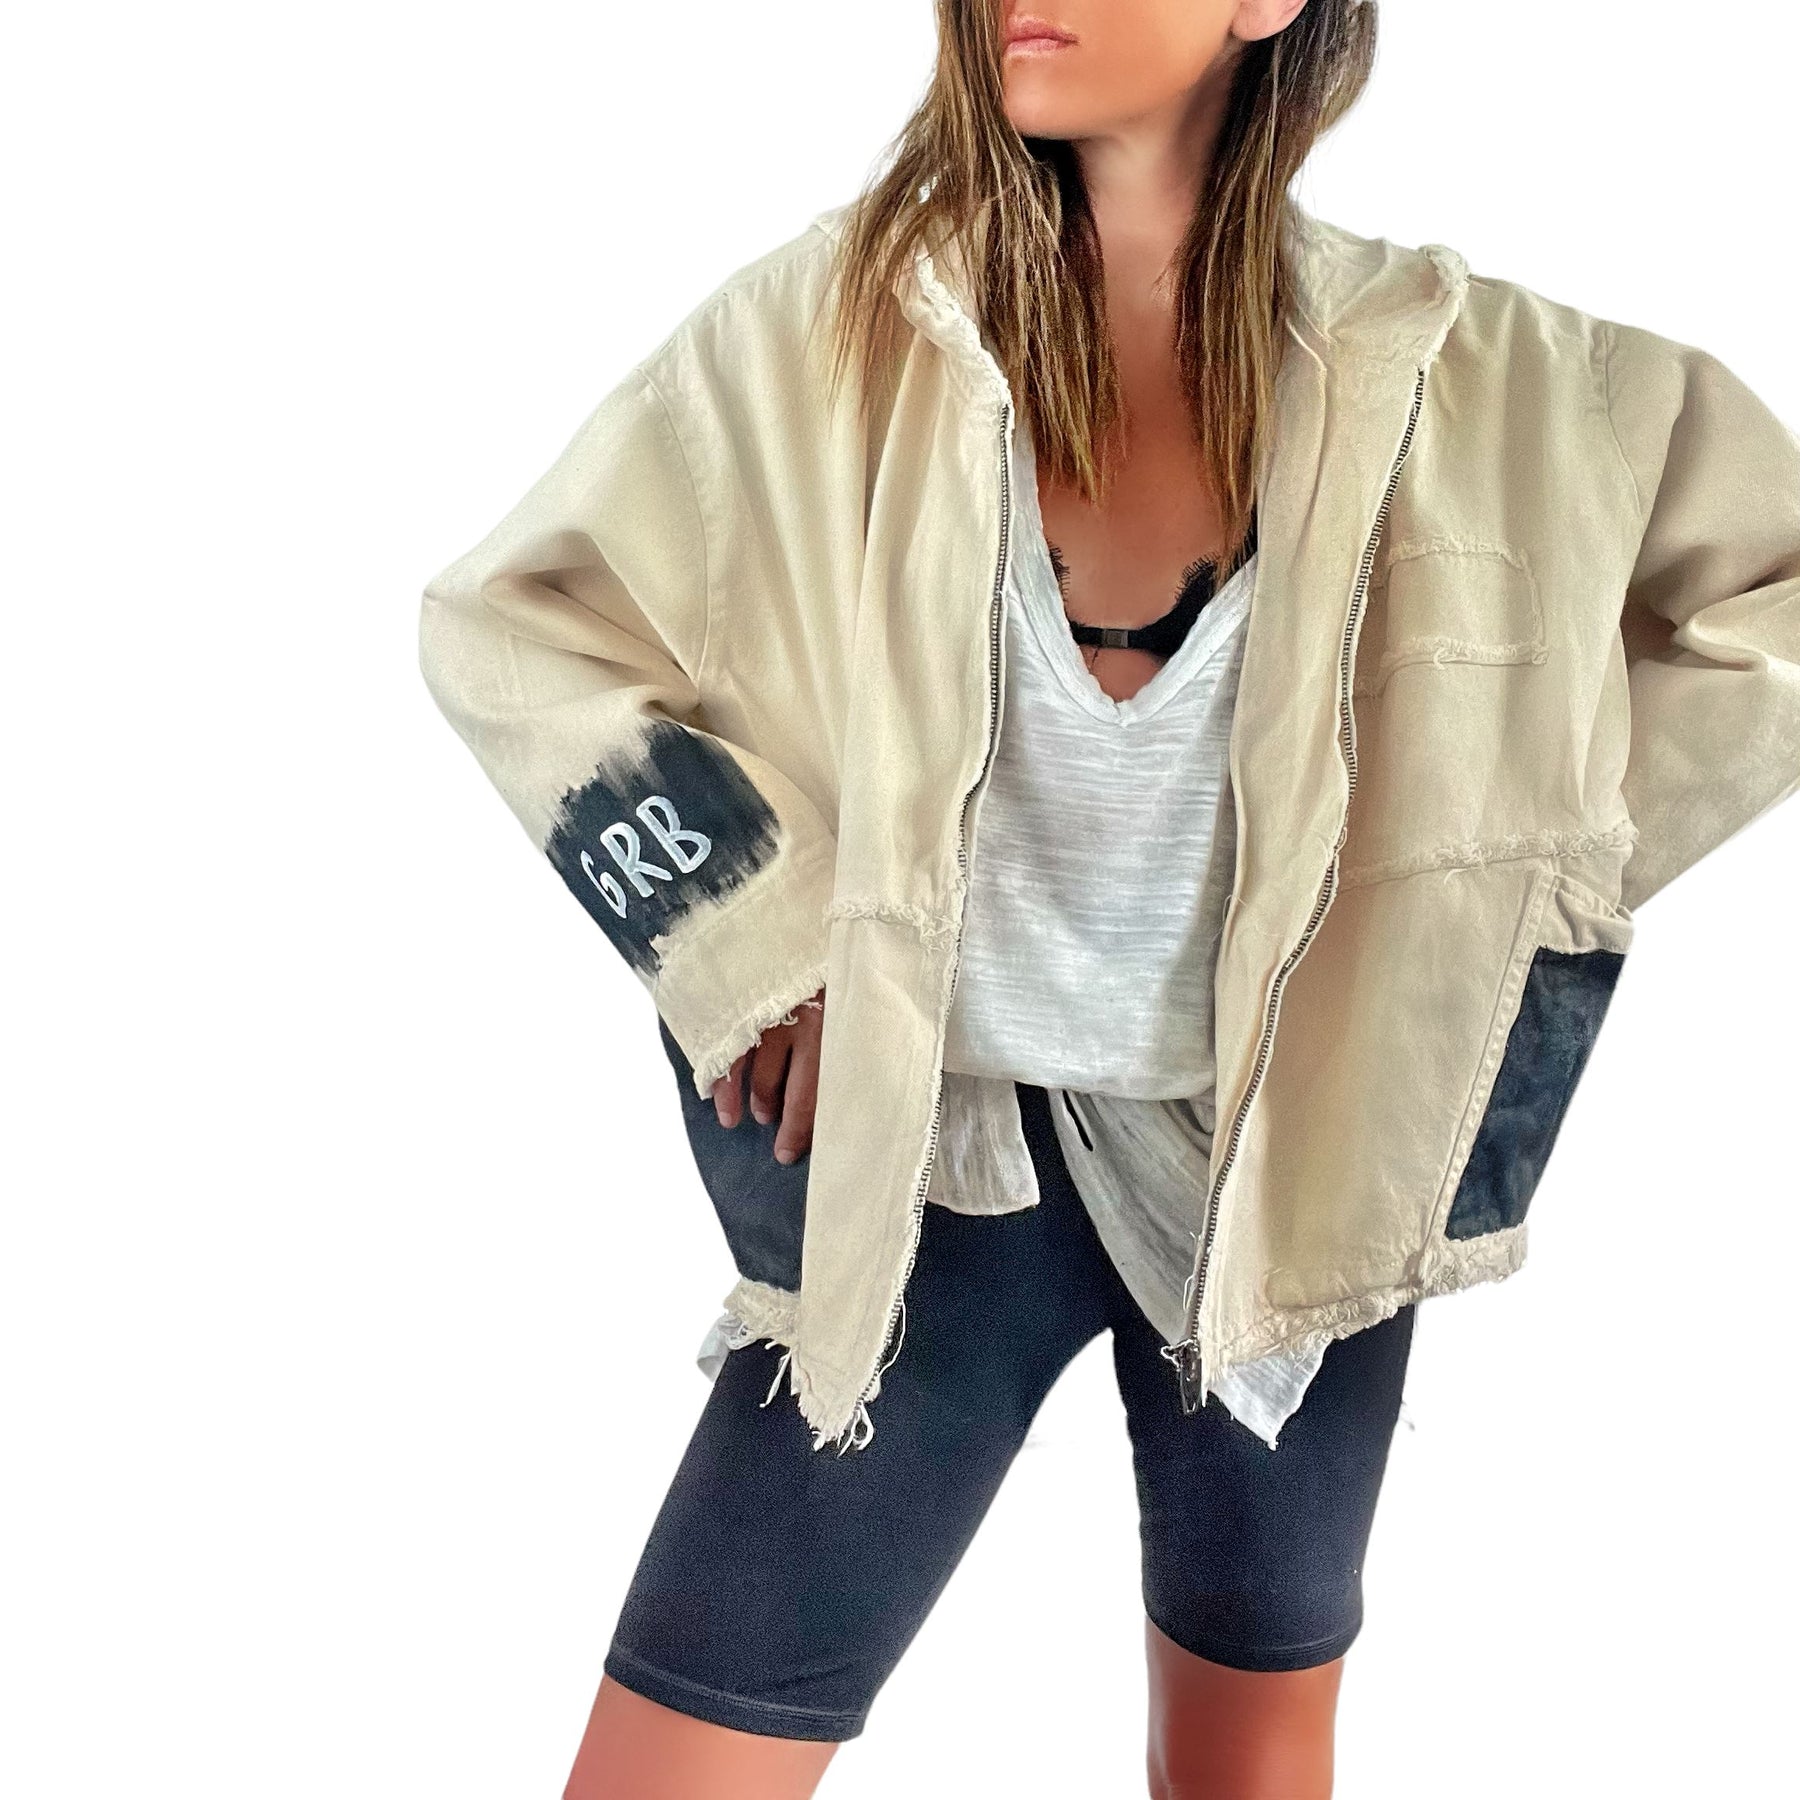 'Basic But Personalized' Ivory Denim Jacket